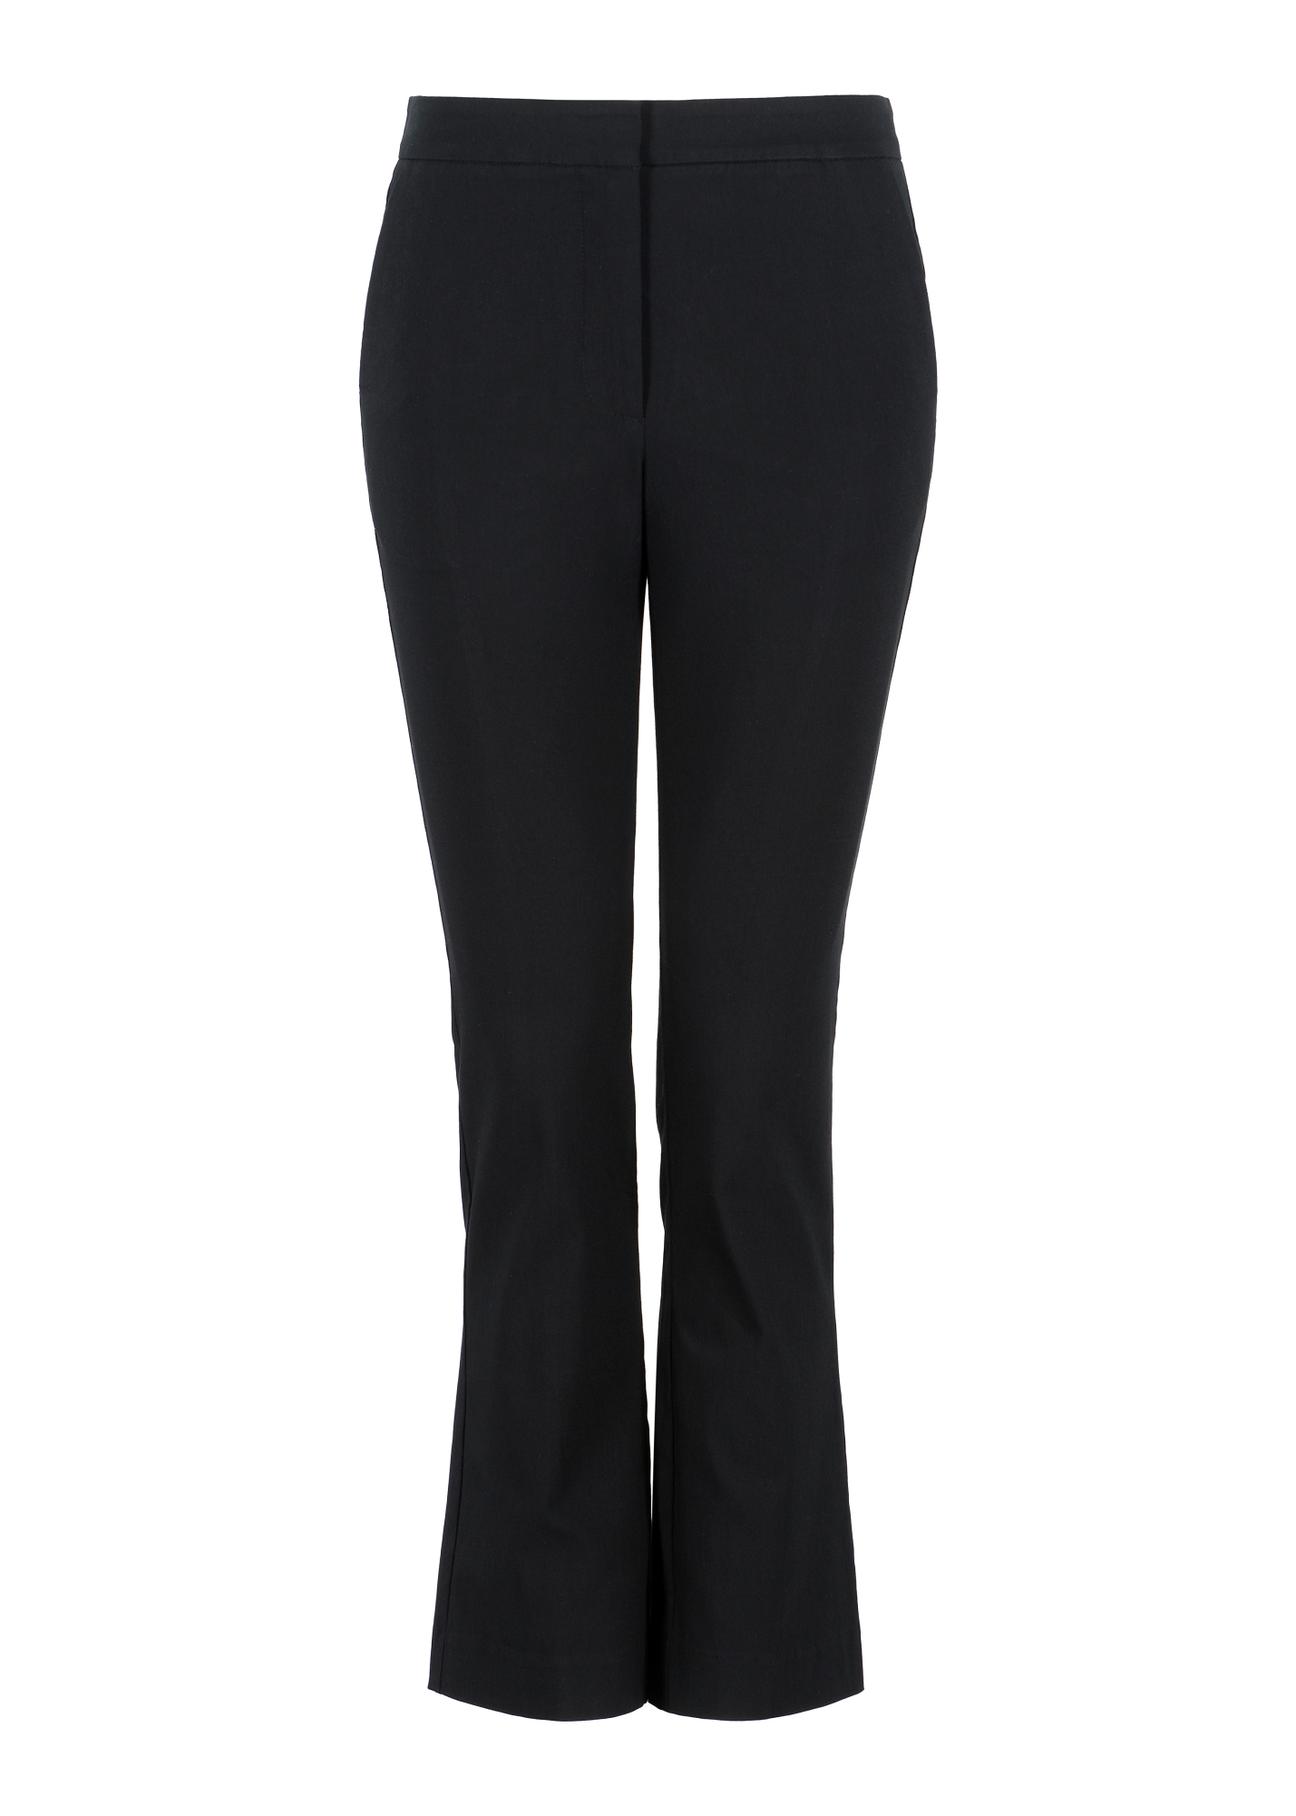 Czarne spodnie damskie 7/8  SPODT-0087-99(Z23)